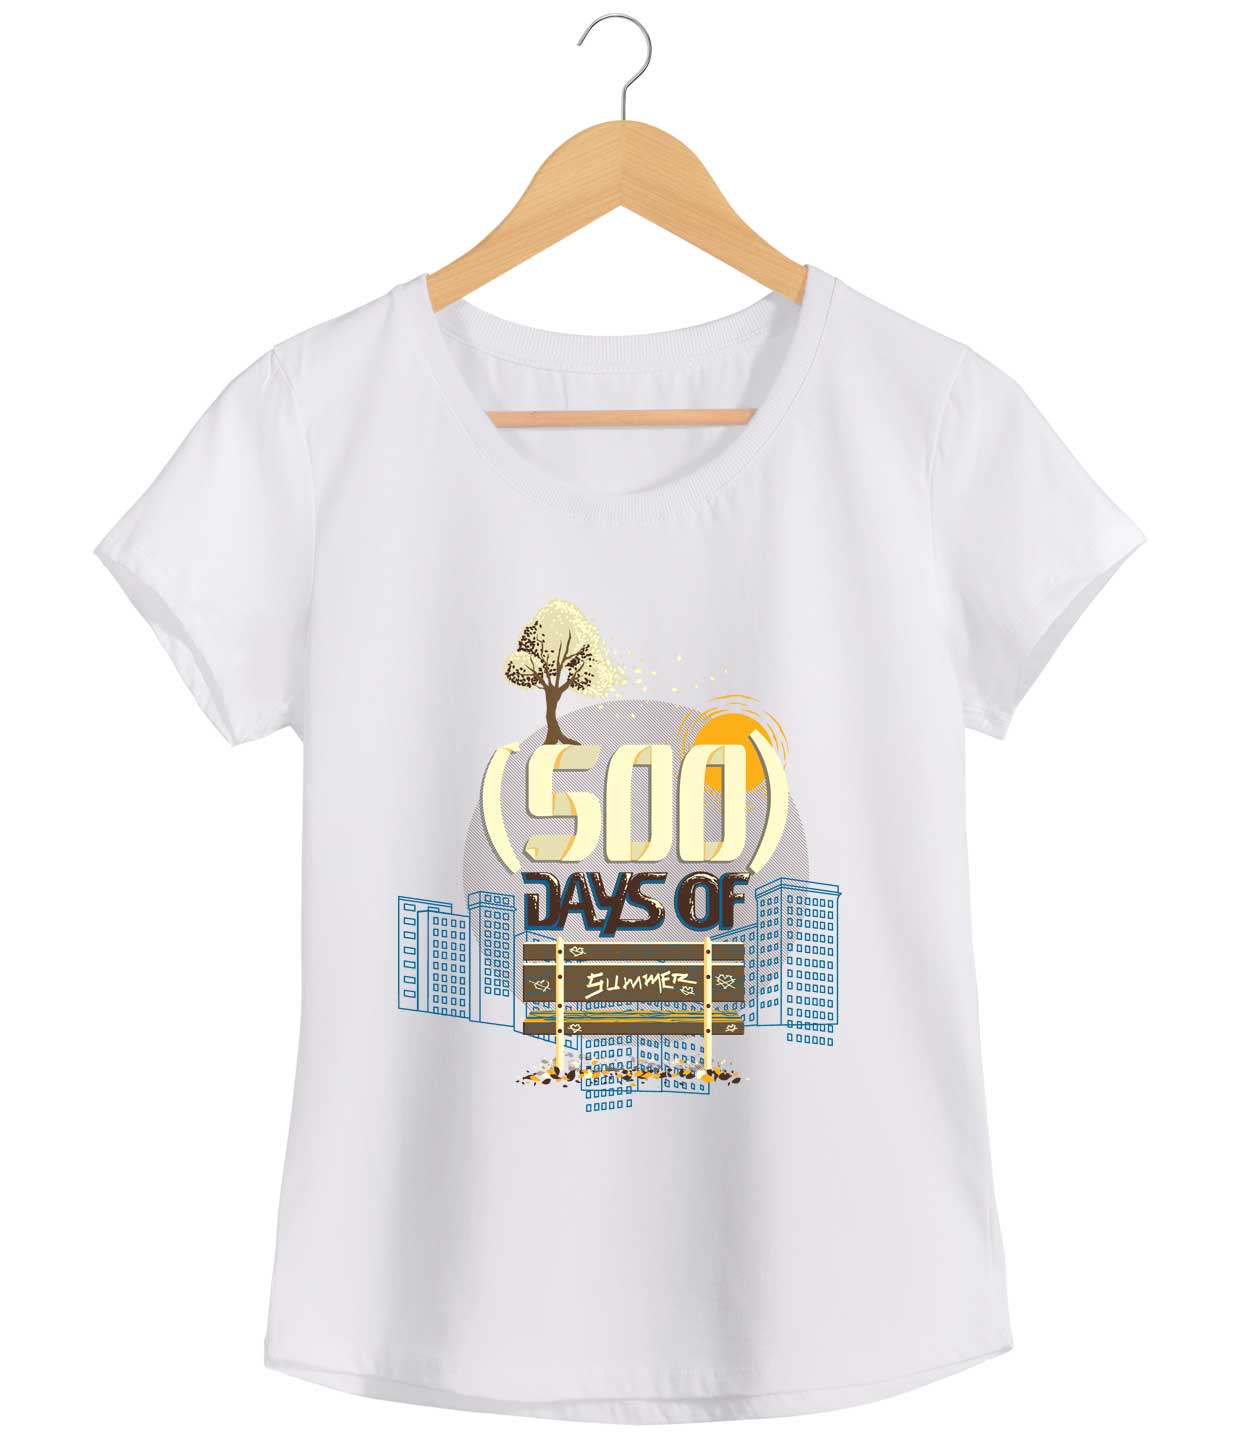 Camiseta (500) Days Of Summer - Feminino